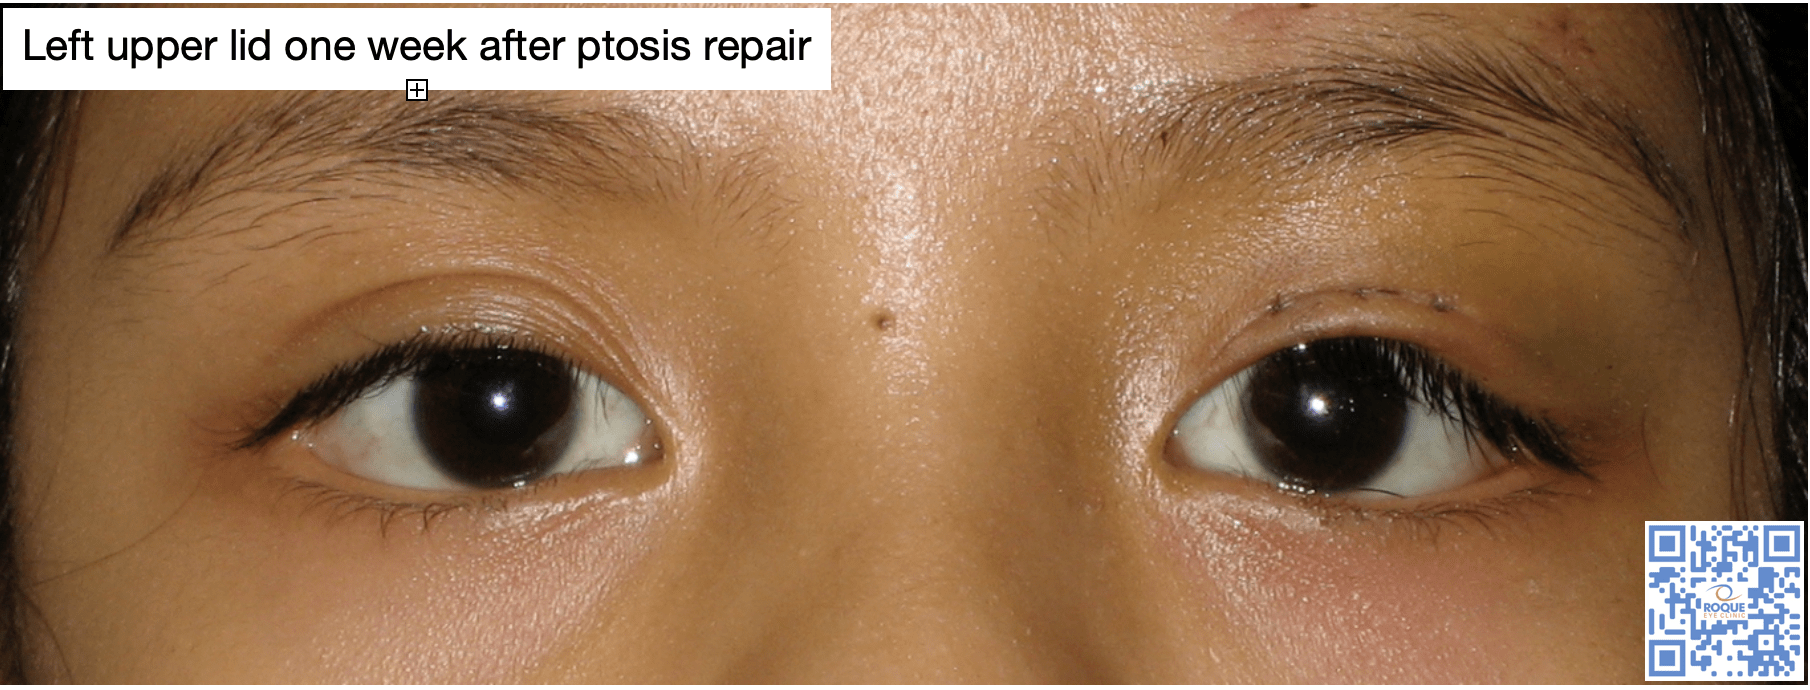 Left upper eyelid - 1 week post ptosis repair